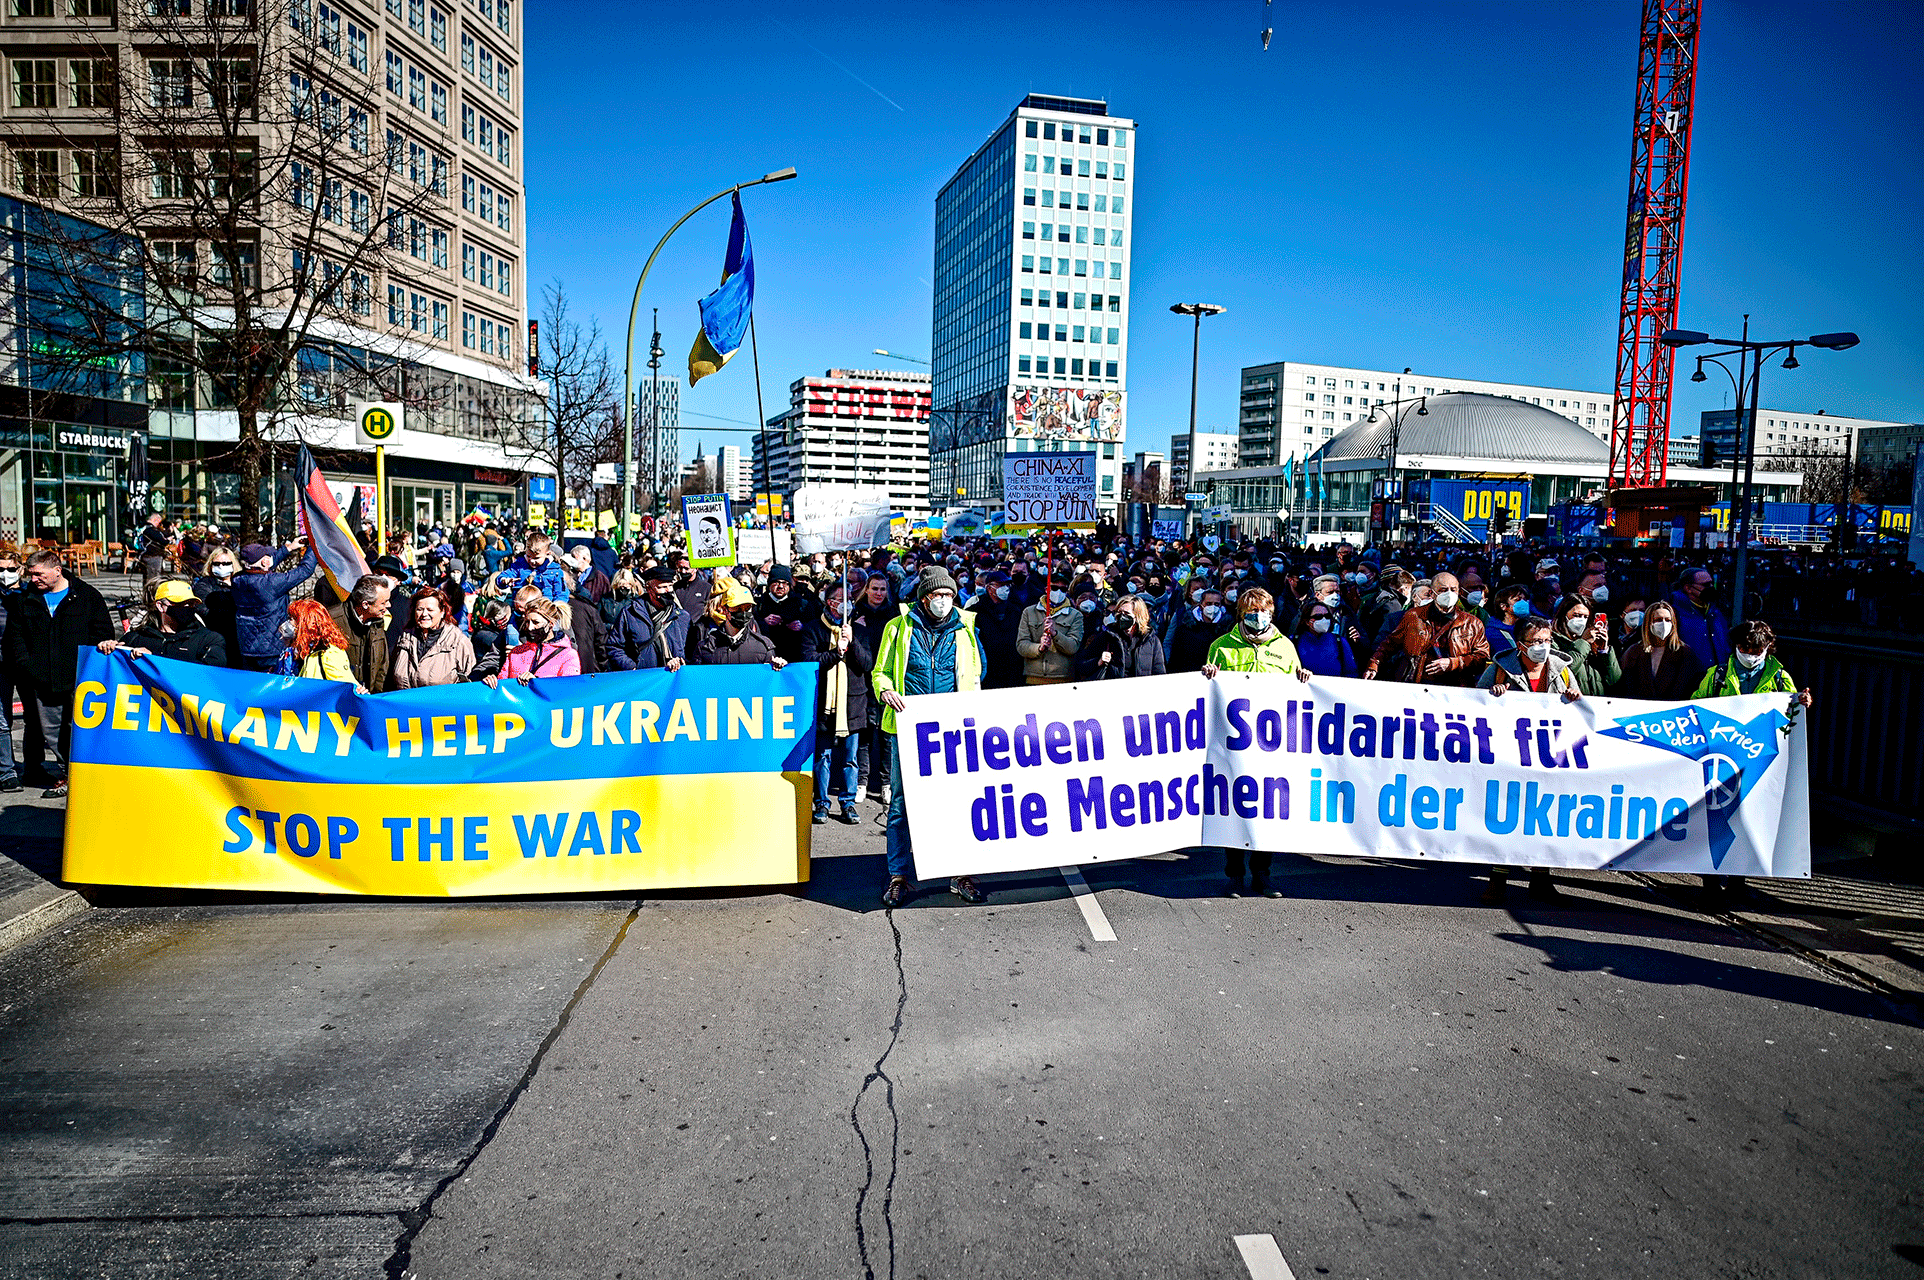 ludzie uczestniczą w "Zakończyć wojnę!  Pokój i solidarność dla narodu Ukrainy" Demonstracja w Berlinie, Niemcy, niedziela, 13 marca 2022 r.